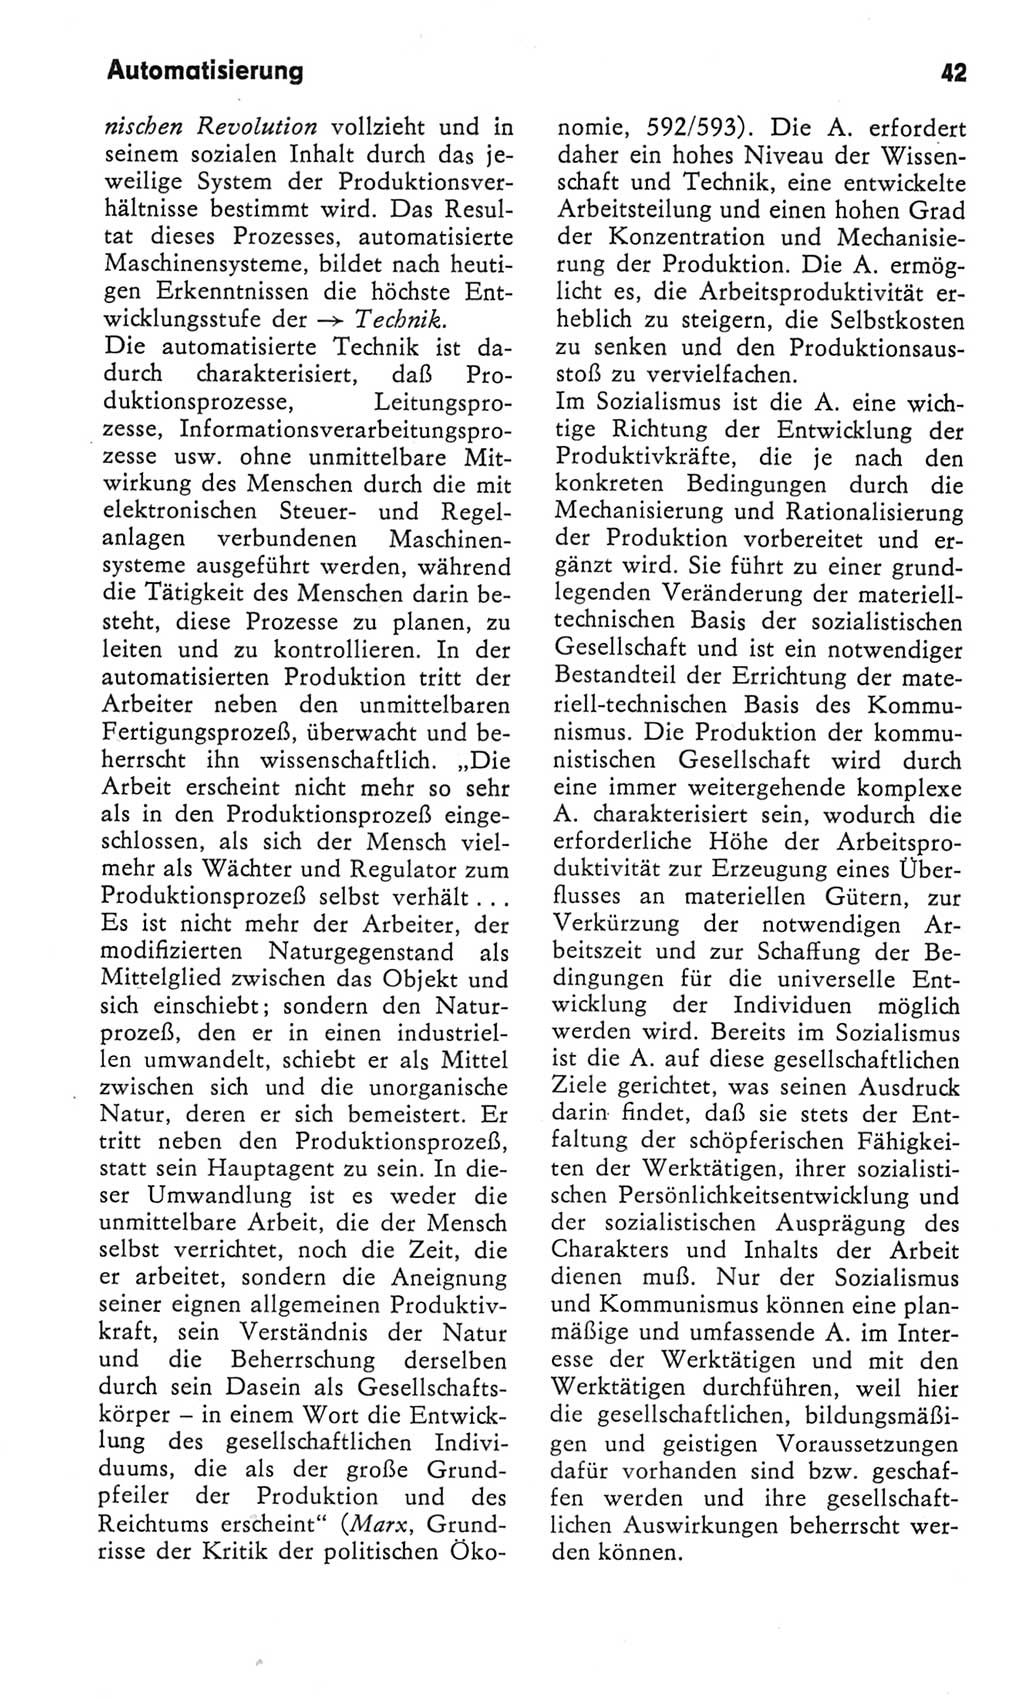 Kleines Wörterbuch der marxistisch-leninistischen Philosophie [Deutsche Demokratische Republik (DDR)] 1982, Seite 42 (Kl. Wb. ML Phil. DDR 1982, S. 42)